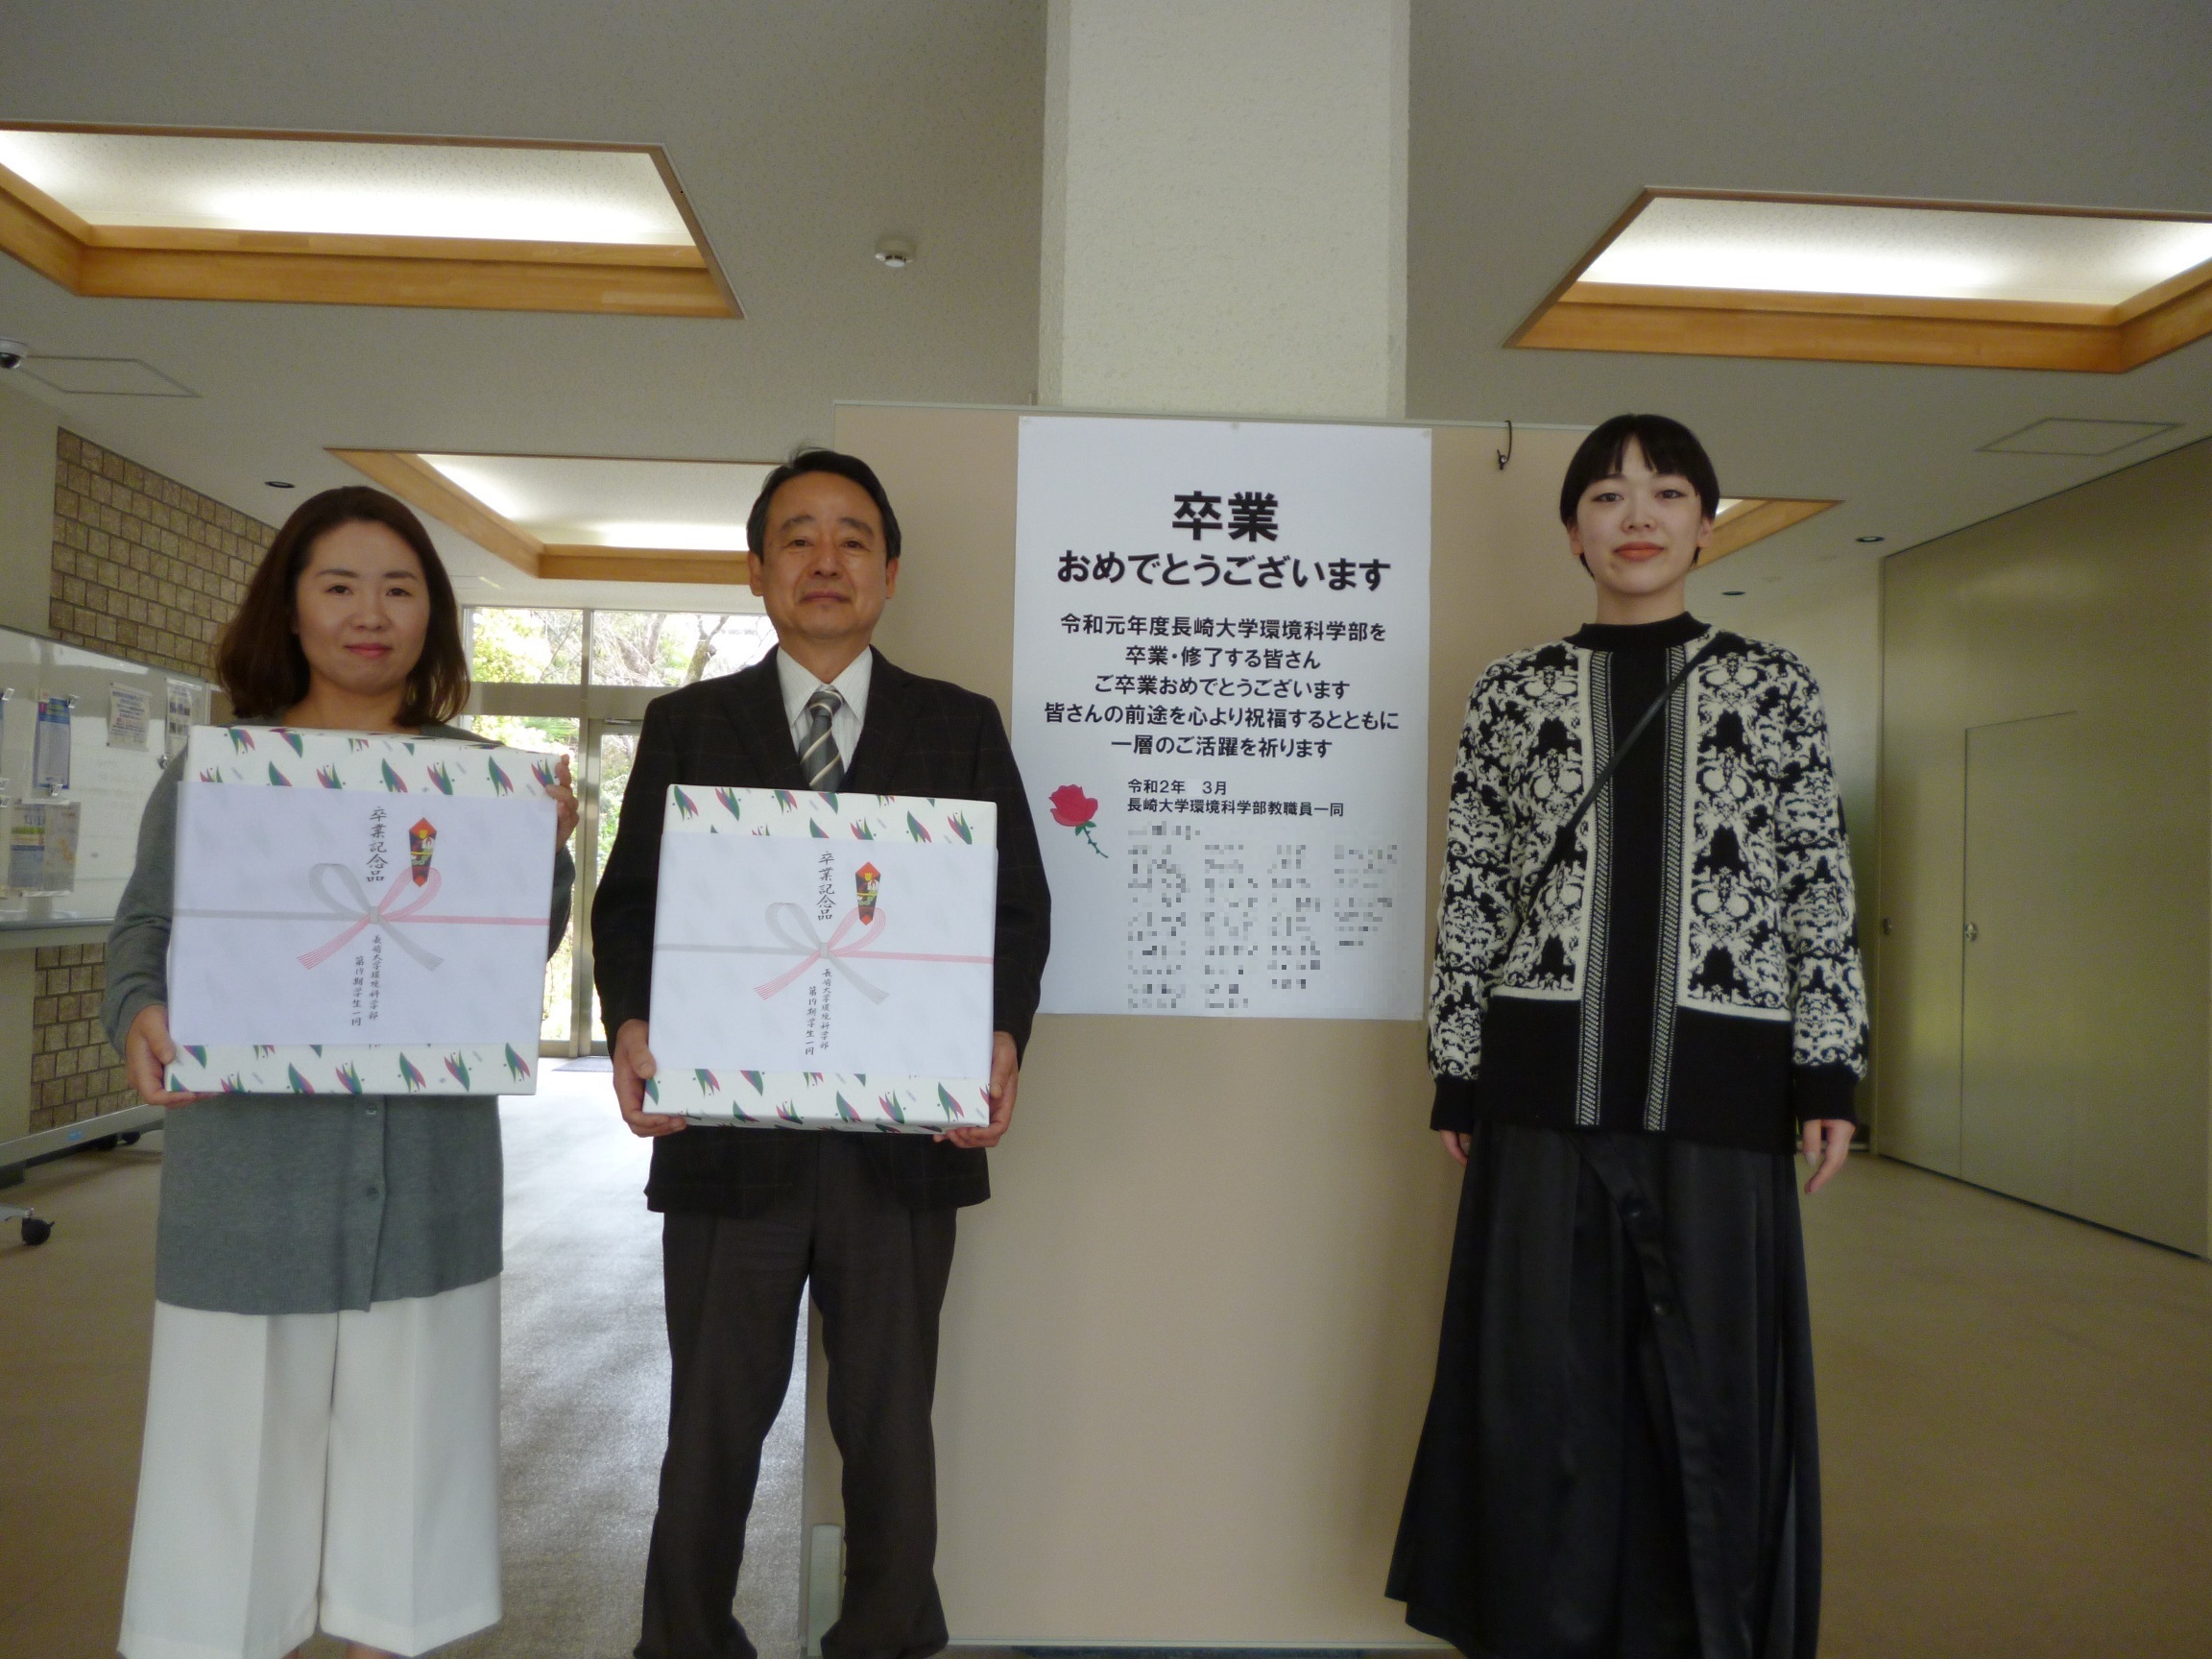 右から卒業生代表の松本佳純さん，山下学部長，学務担当職員